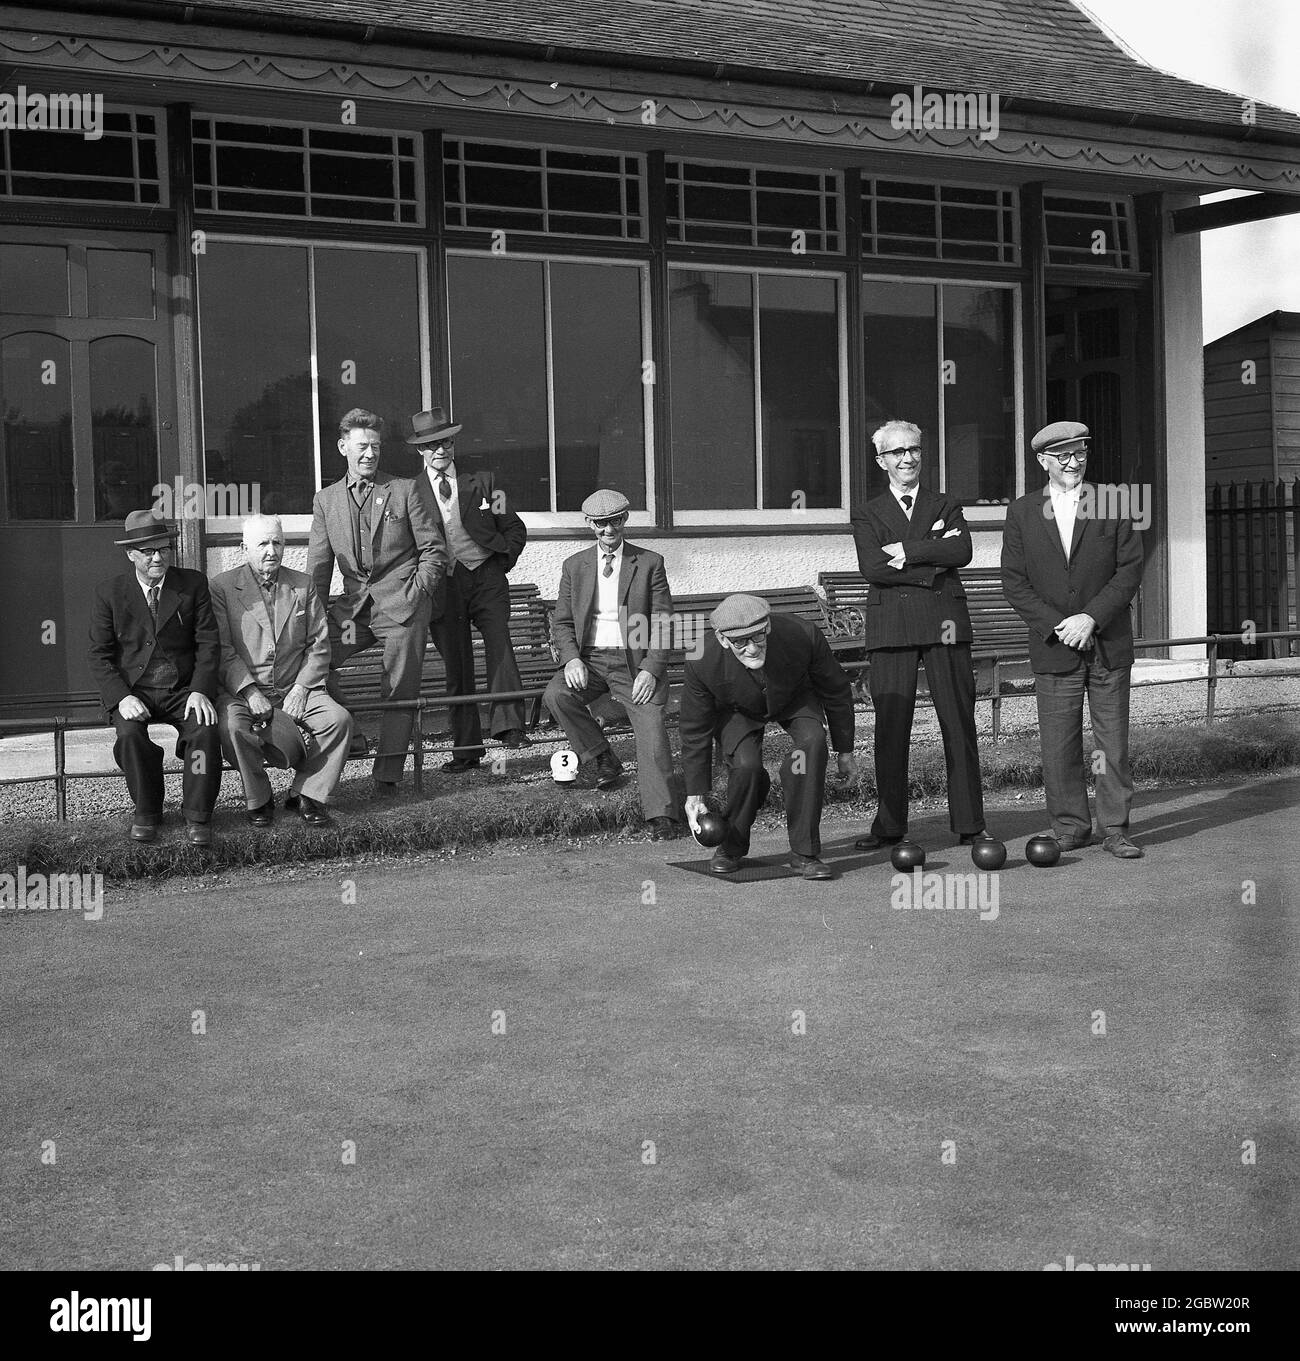 Historische Männer der 1960er Jahre in formellen Anzügen spielen Rasenbowling, während andere Männer vor dem Clubhaus im Bowlingclub in Kelty, Fife, Schottland, Großbritannien, zuschauen. In dieser Zeit würden Männer für fast alle ihre Aktivitäten, bei der Arbeit, am Strand und wie hier zu sehen, zum Sport und einem gemütlichen Bowellspiel, Anzüge tragen. Stockfoto